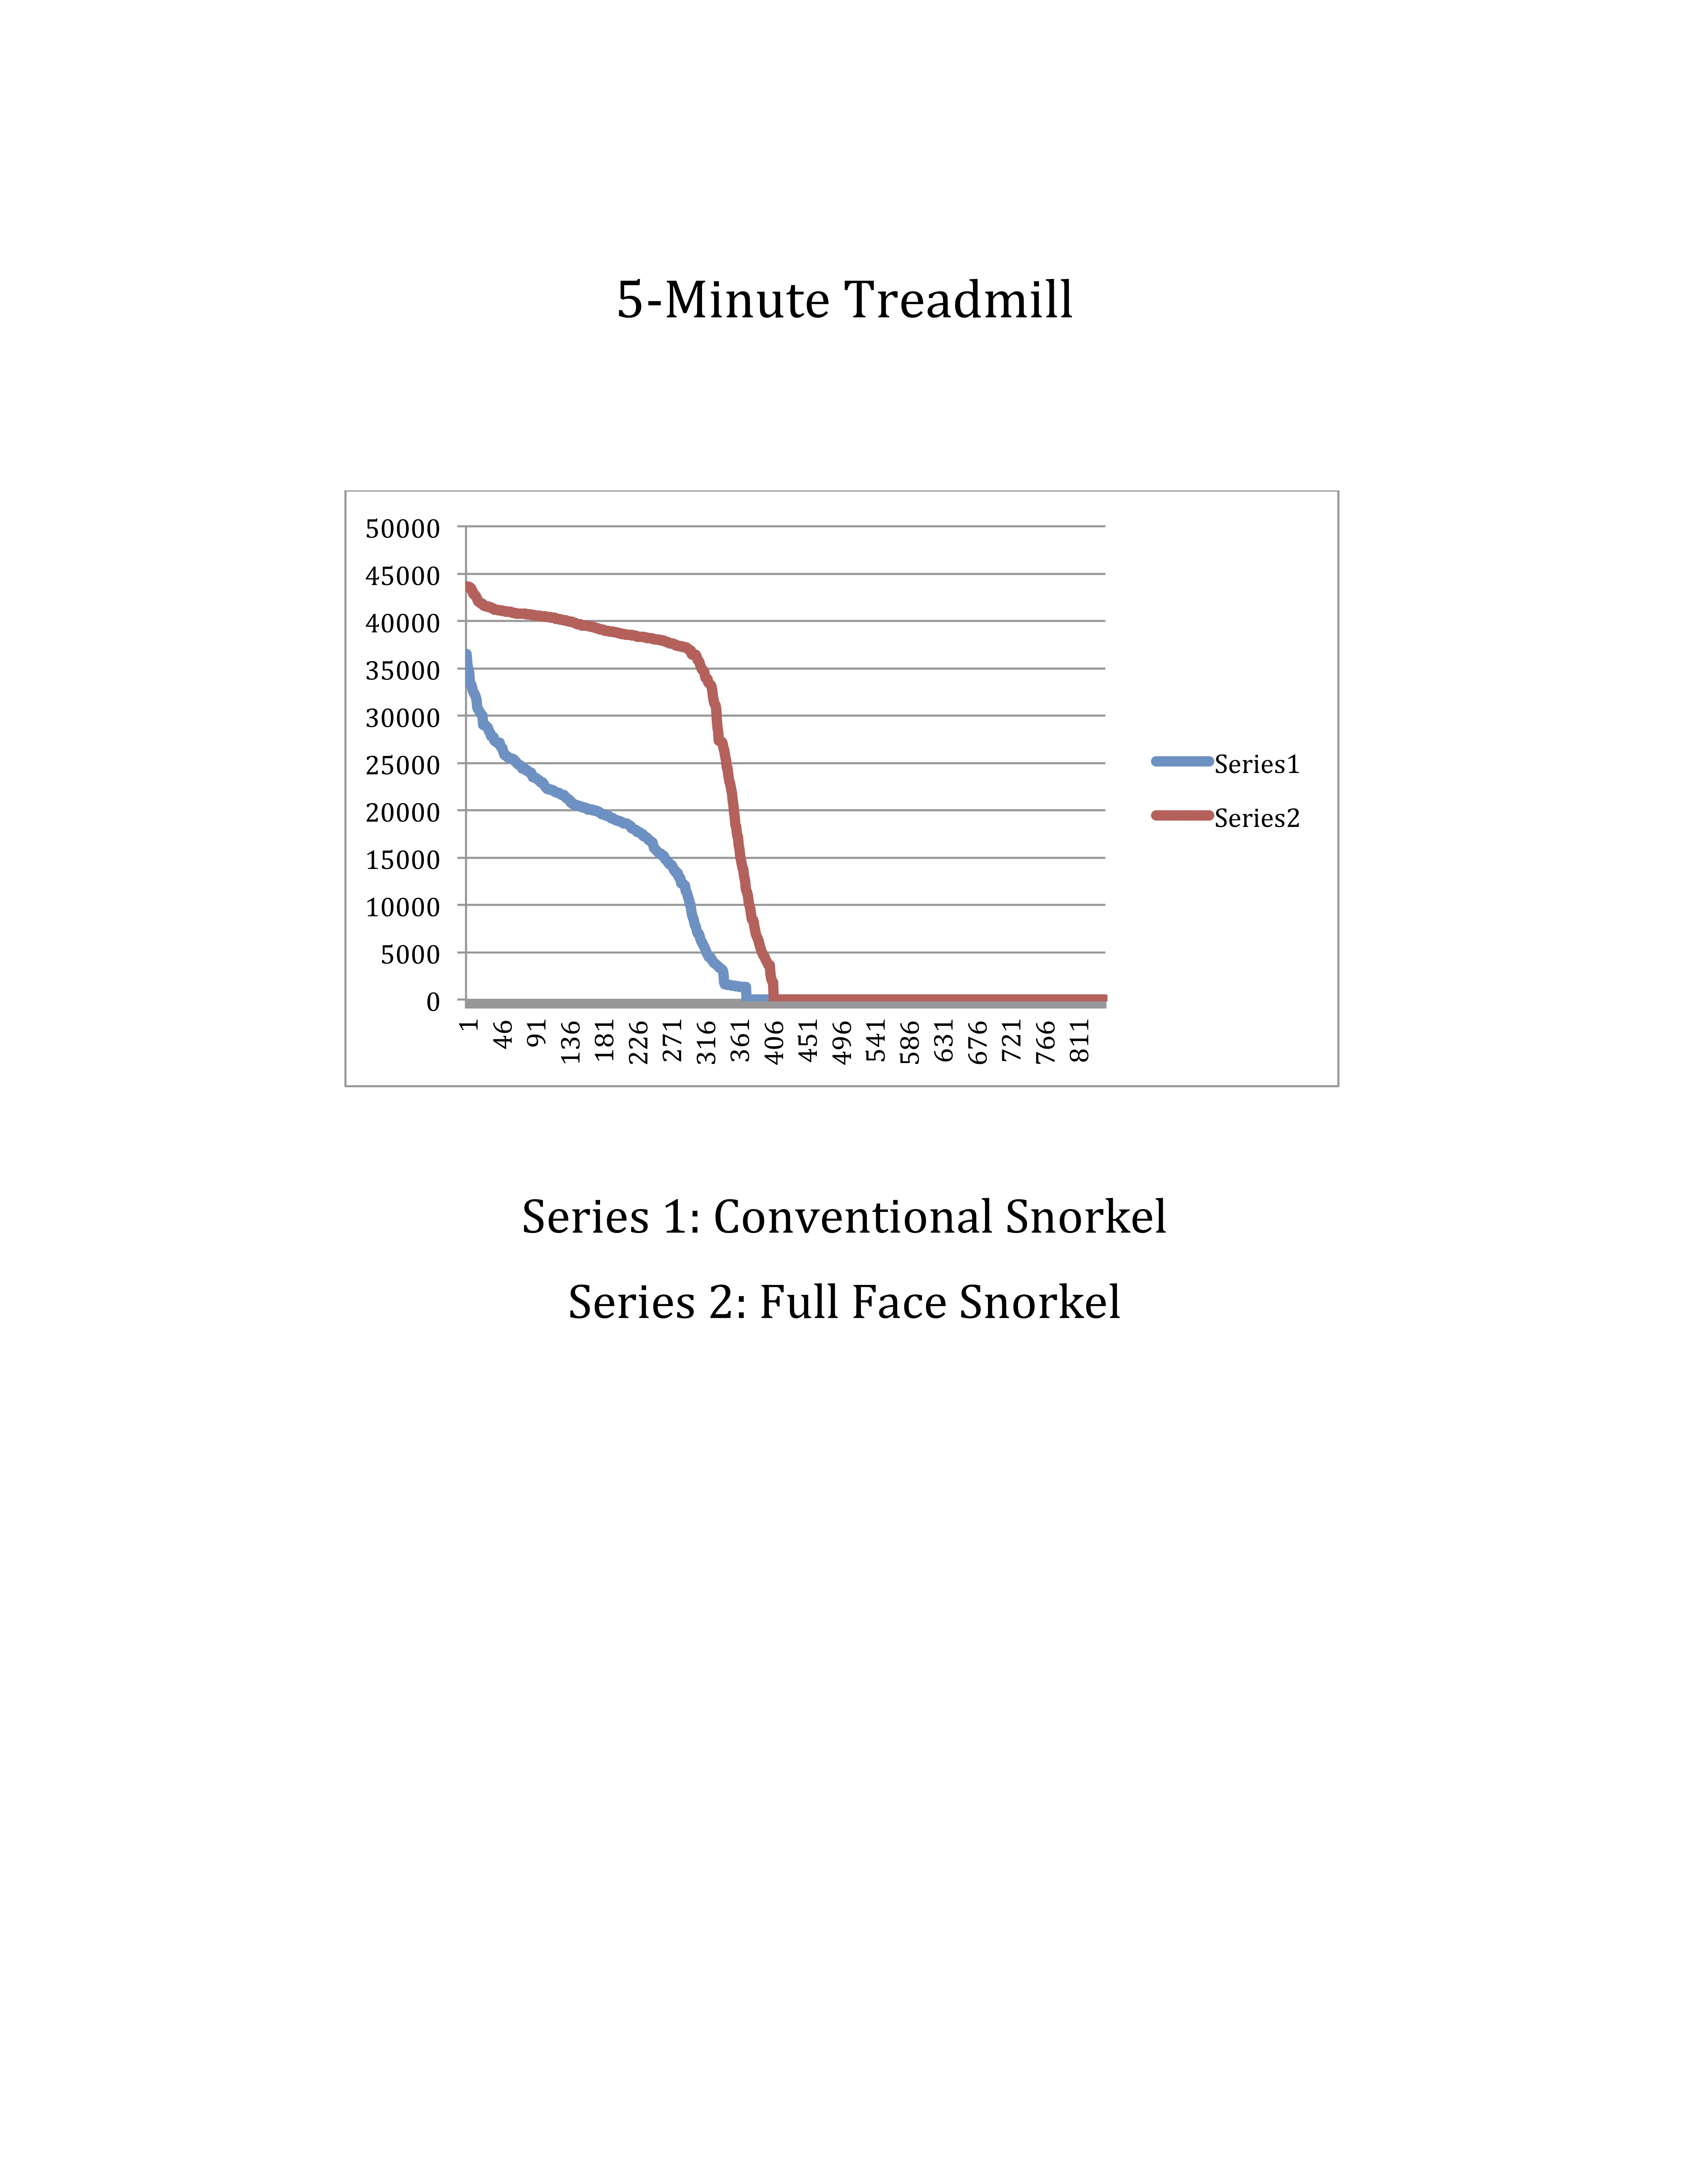 treatmill graph compare.jpg